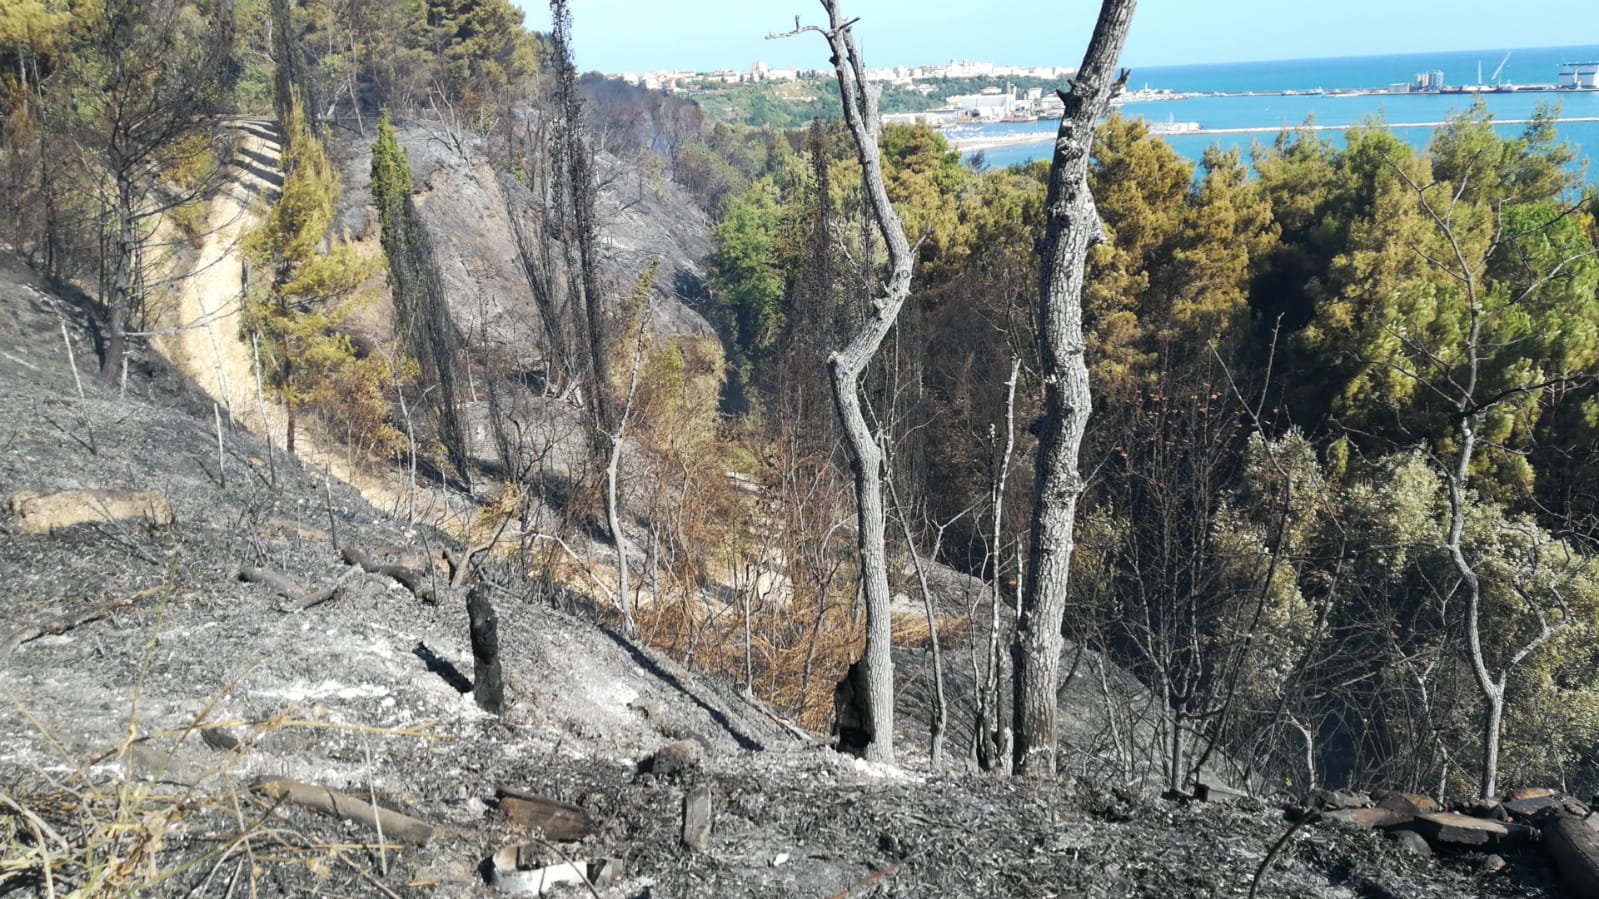 Roghi in Abruzzo, il wwf: “si ripensino prevenzione e gestione degli incendi”